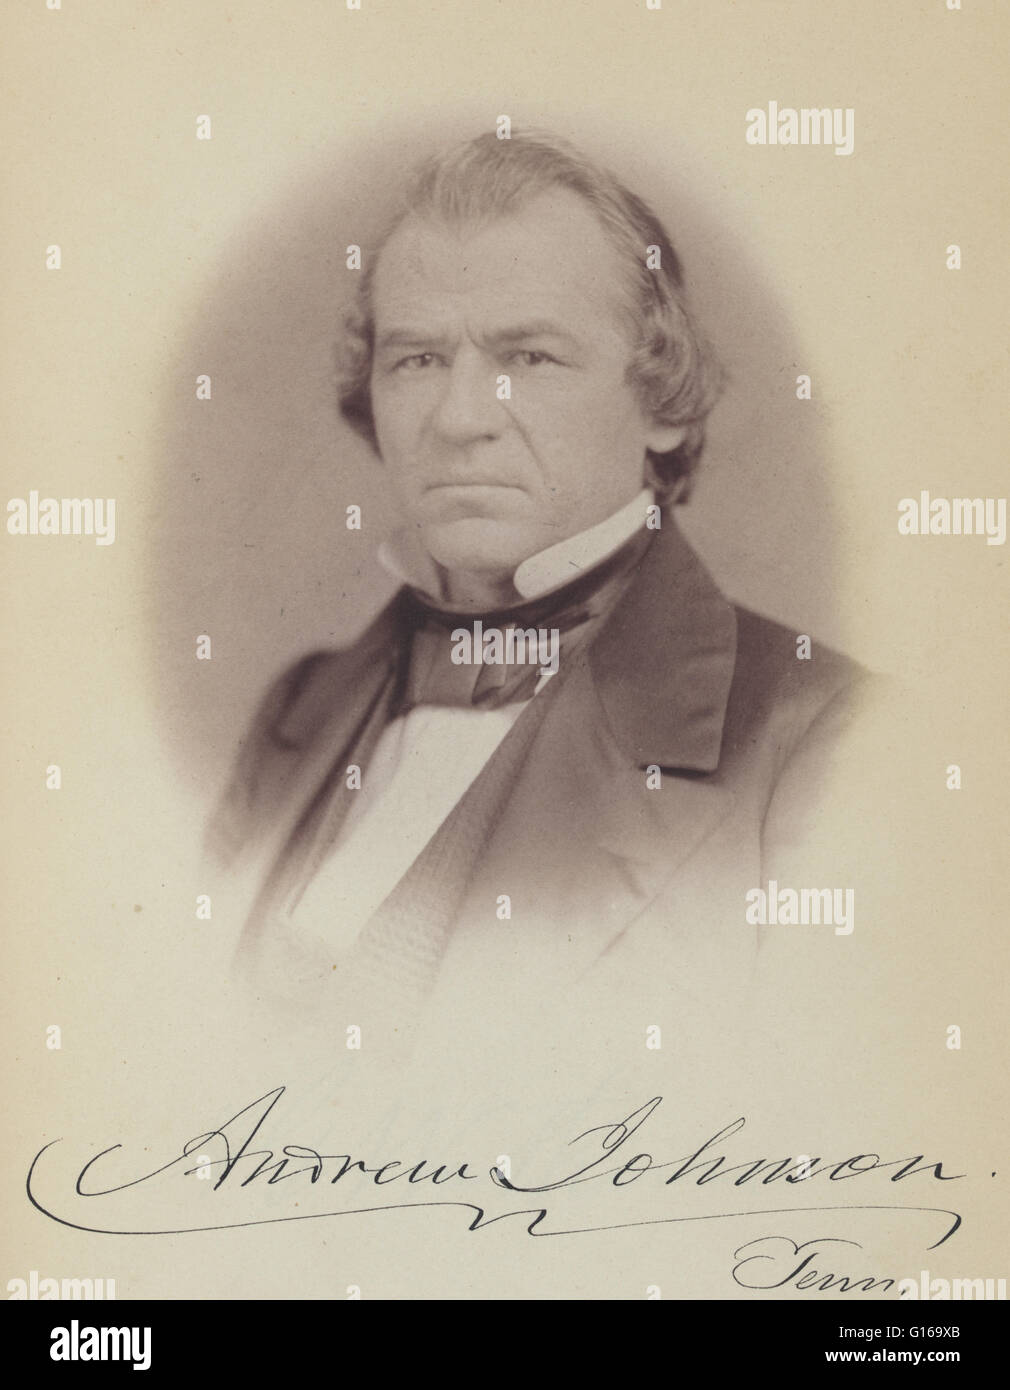 Andrew Johnson (29. Dezember 1808 - 31. Juli 1875) war der 17. Präsident der Vereinigten Staaten (1865-1869). Er diente als Ratsherr und Bürgermeister von Greenville, Tennessee vor 1835 in das Repräsentantenhaus gewählt. Nach kurzen Gottesdienst in der T Stockfoto